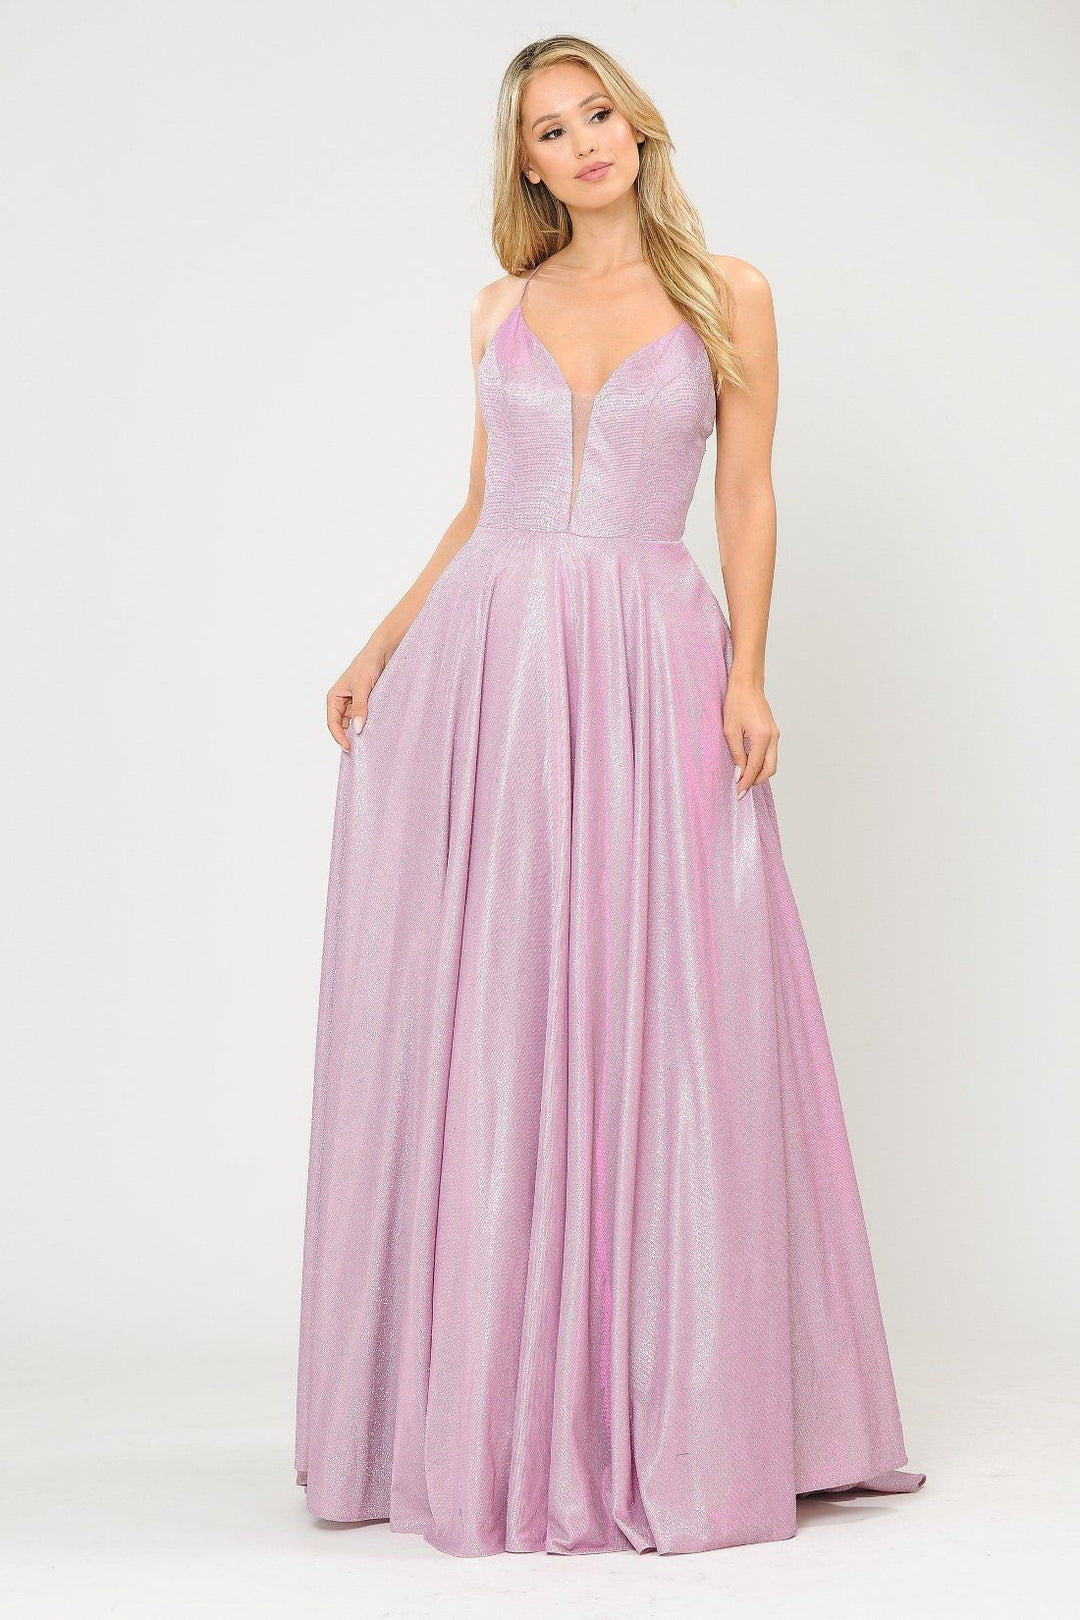 Long V-Neck Glitter Dress with Corset Back by Poly USA 8556